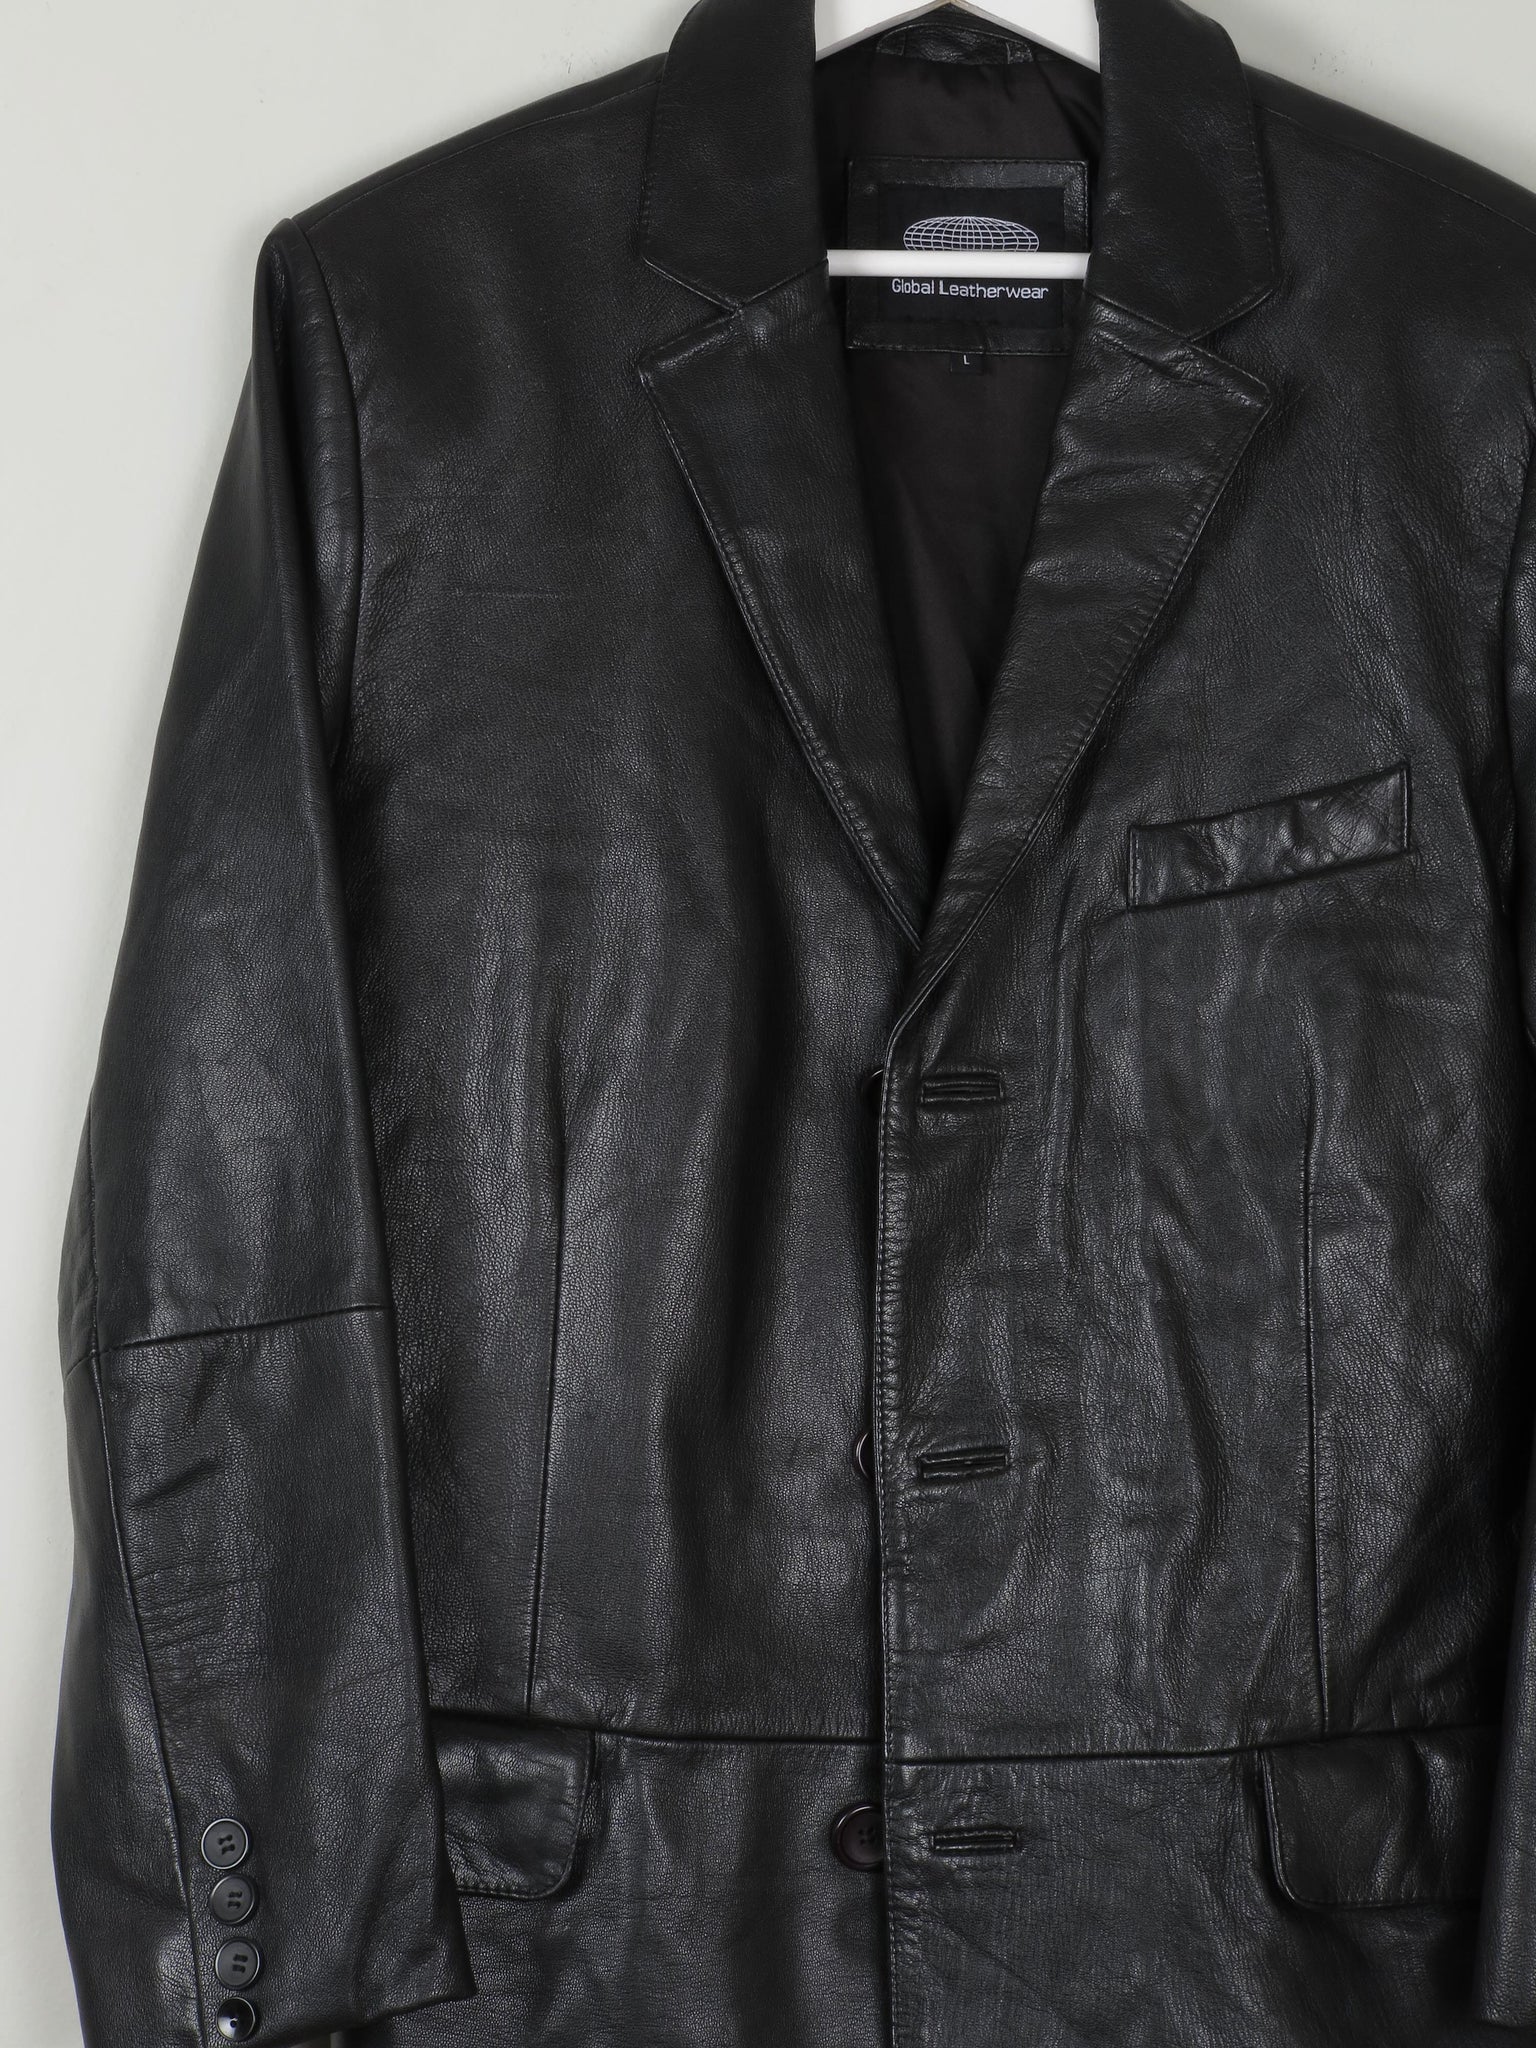 Men's Vintage Black Leather Jacket L - The Harlequin